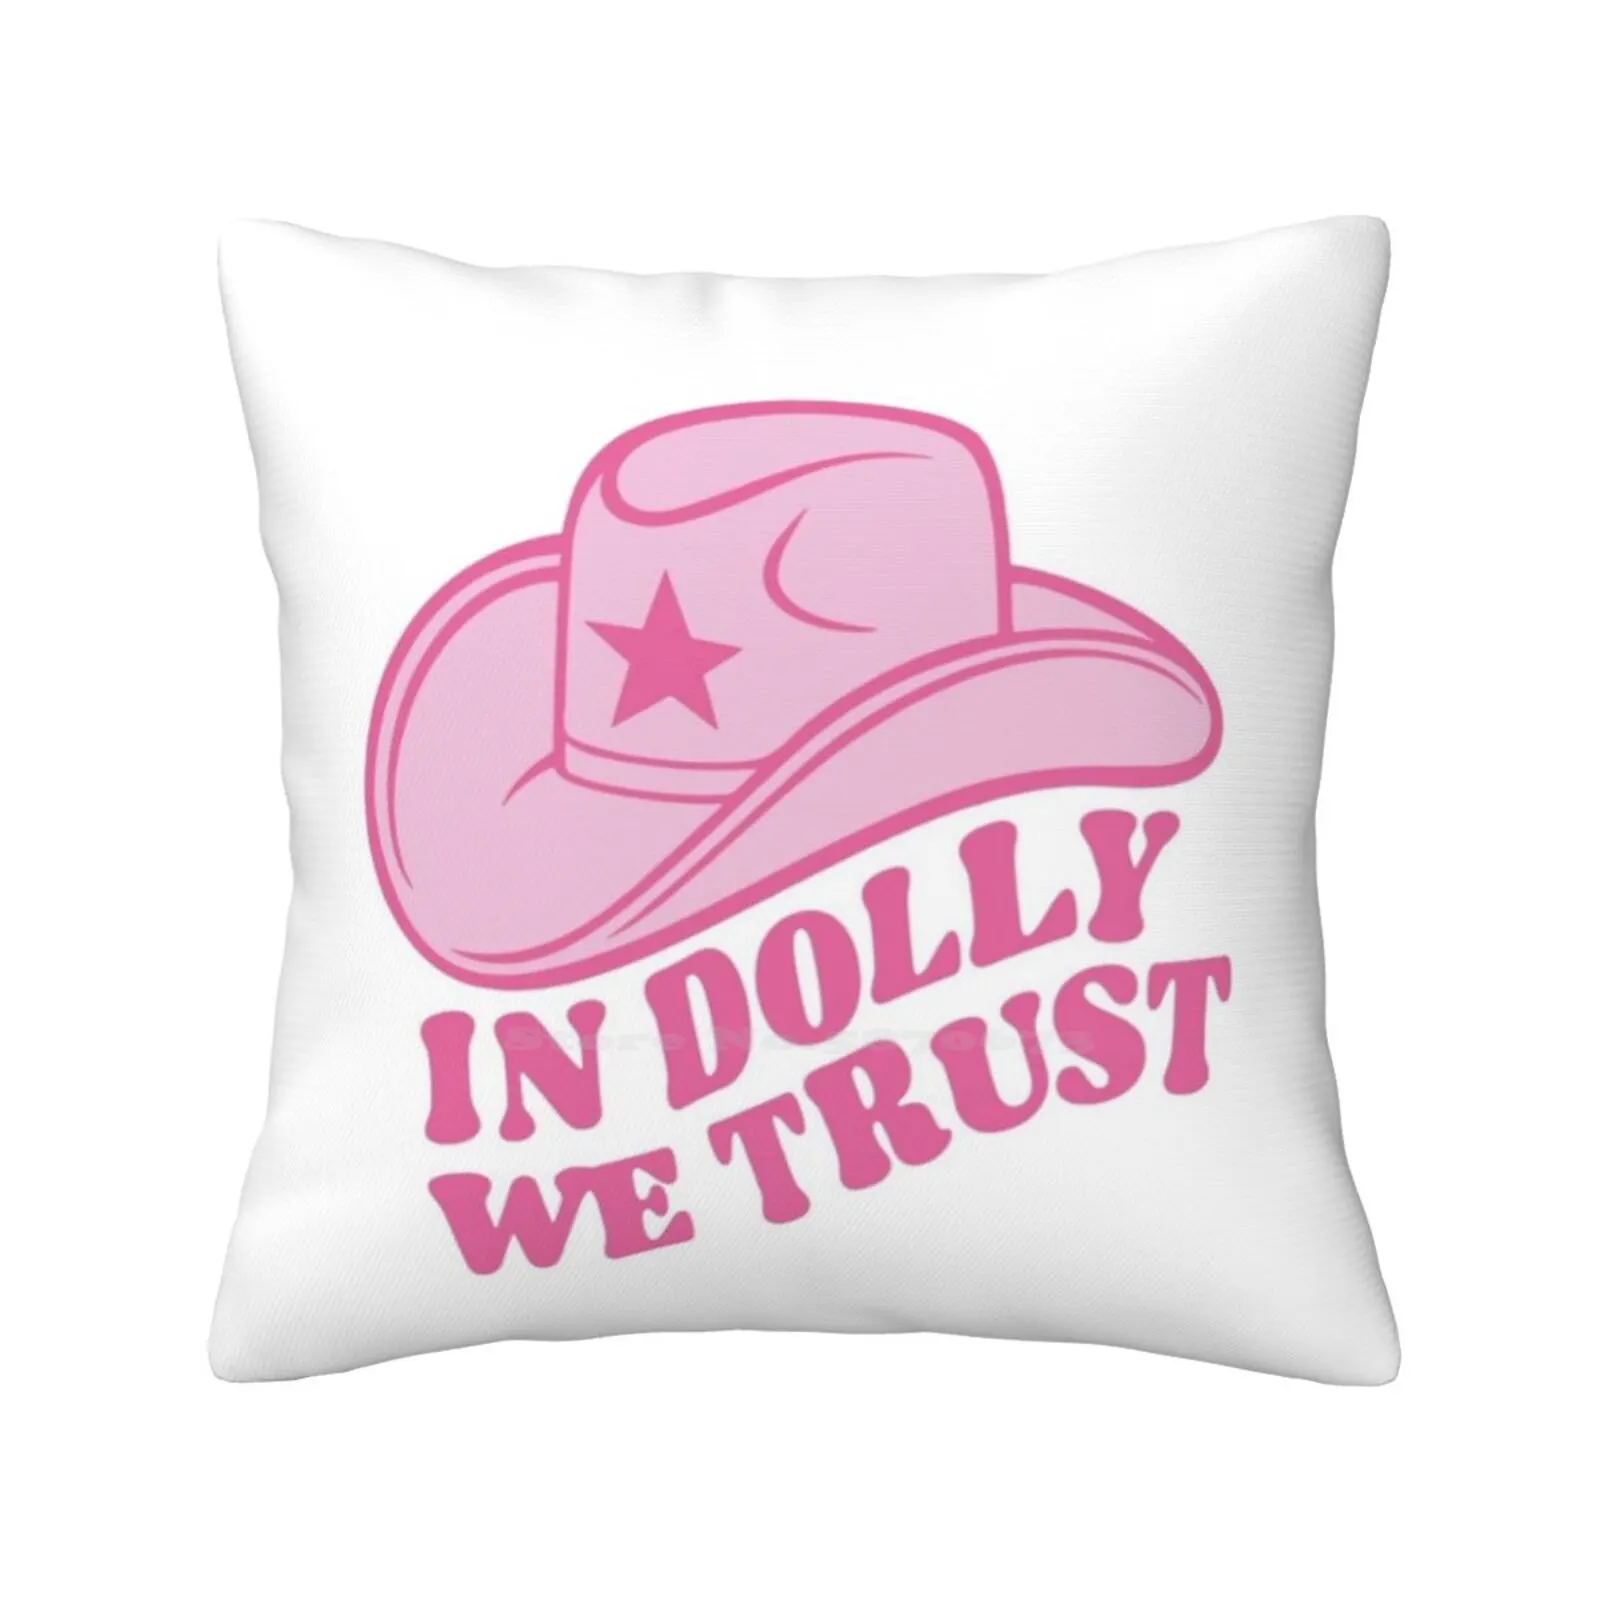 

Наволочка Dolly Parton с изображением музыкальной шапки, ковбойская наволочка розового и желтого цветов в эстетике ковбоя, кантри, что бы Долли делал певец, музыка